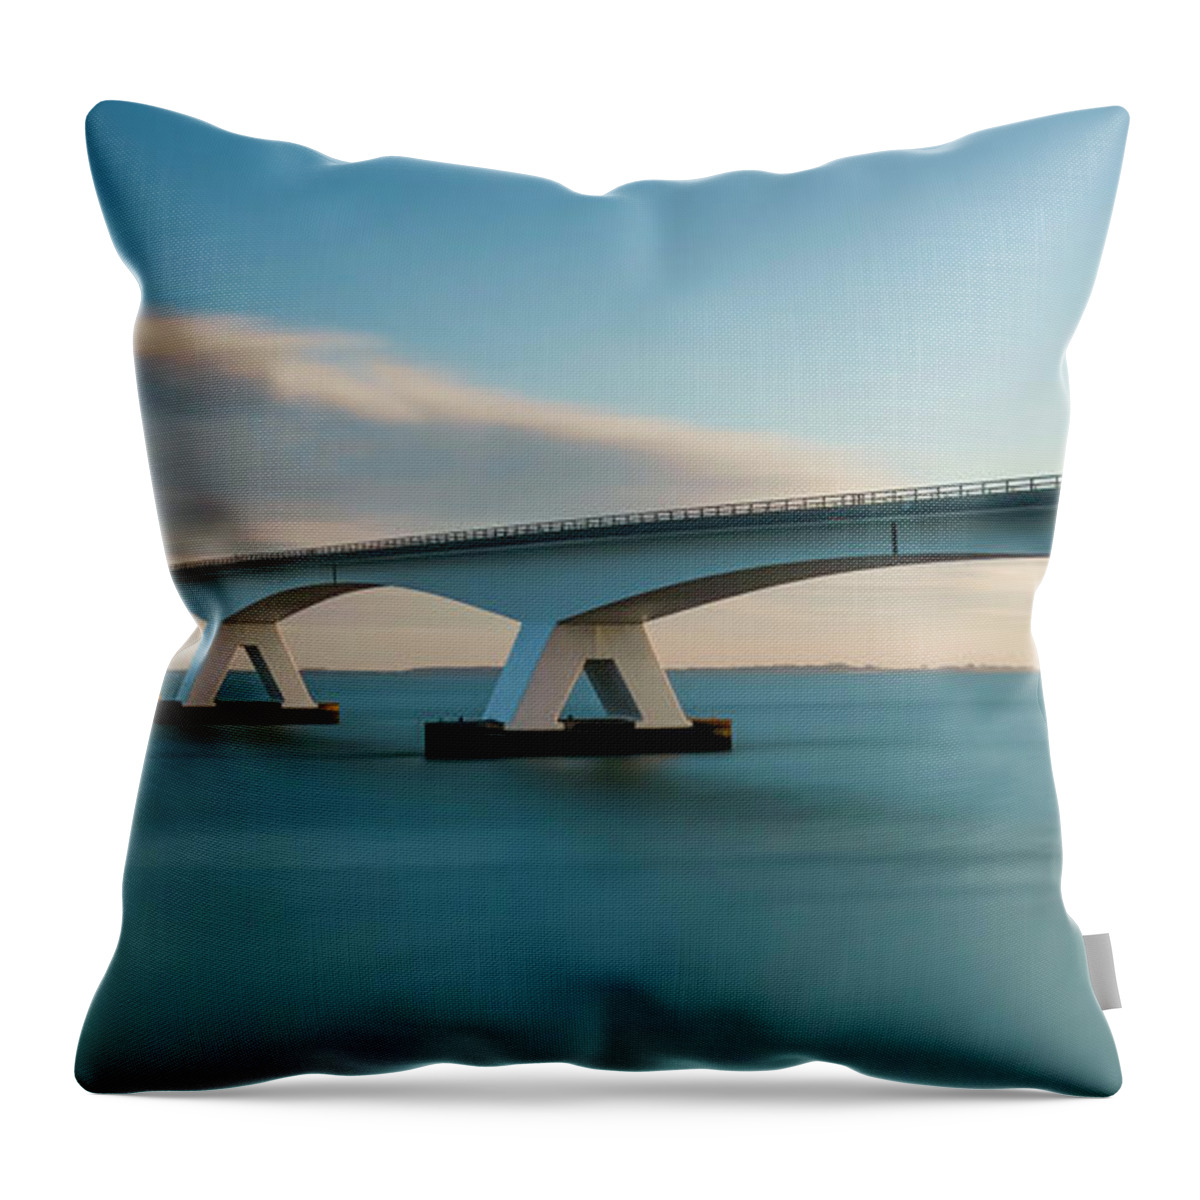 Bridge Throw Pillow featuring the photograph Blue Bridge by Marjolein Van Middelkoop